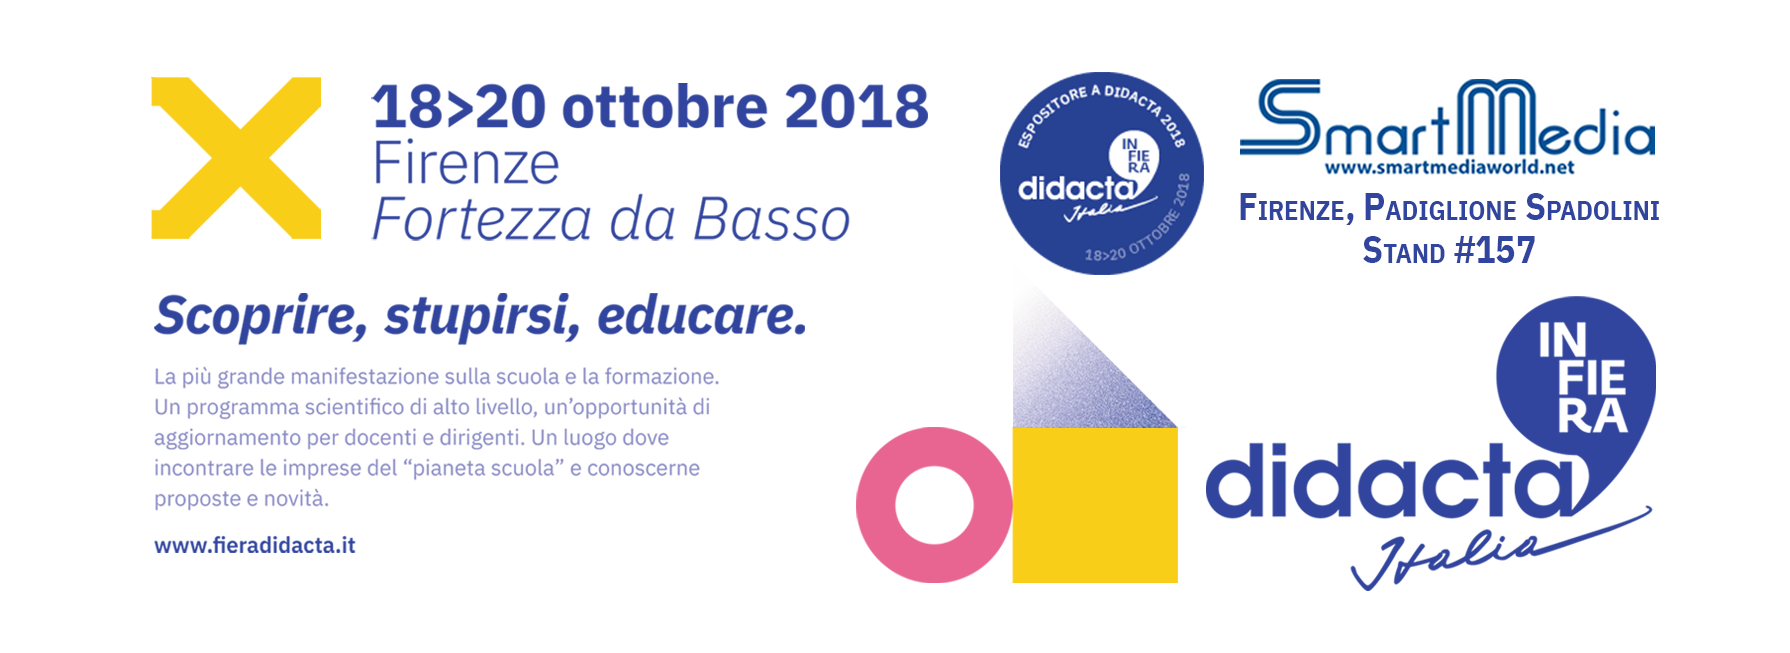 SmartMedia @Didacta2018 - Firenze, Fortezza da Basso - 18-20 Ottobre, stand 157 Padiglione Spadolini